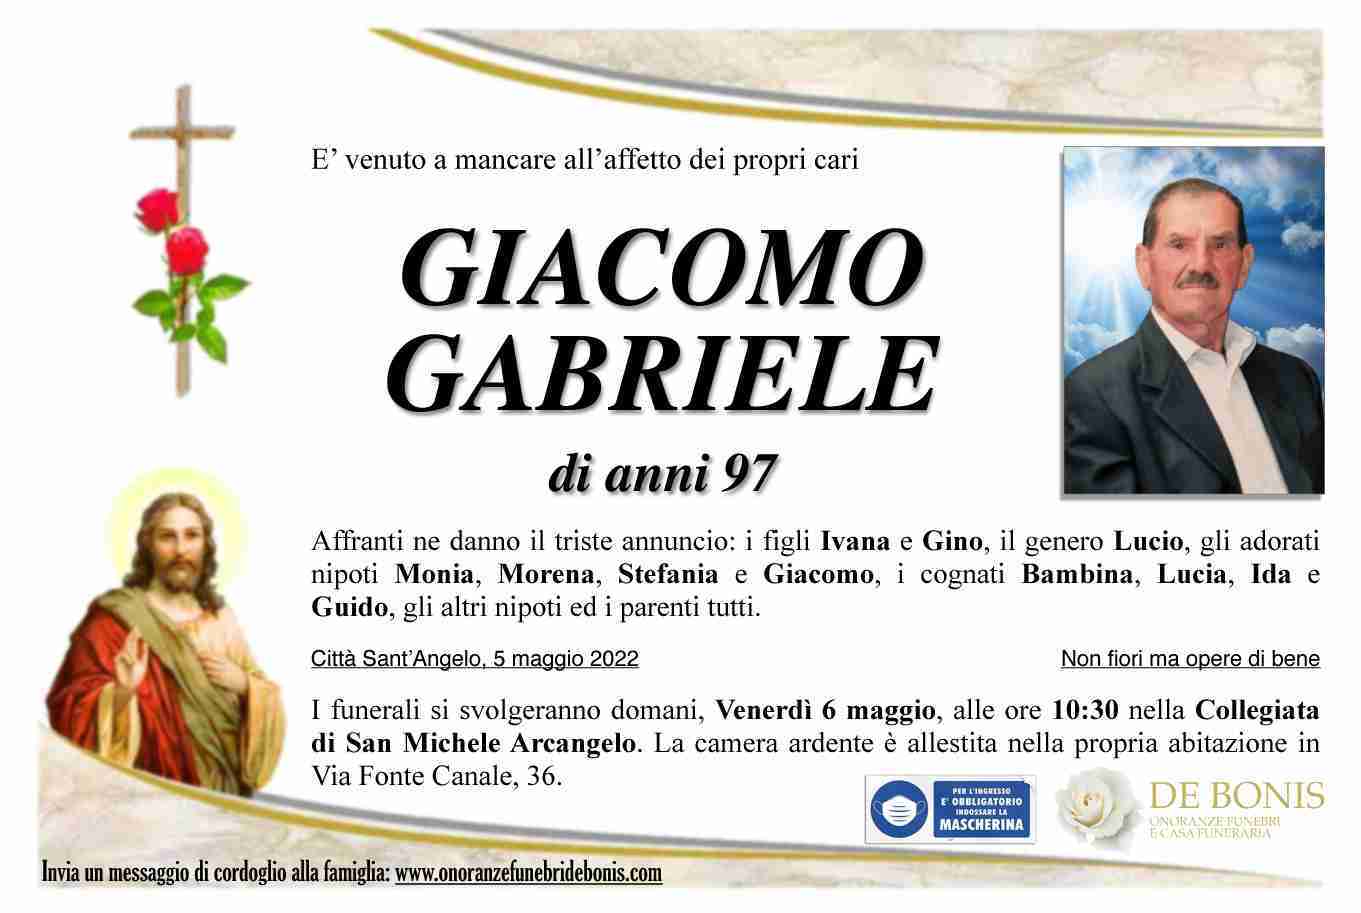 Giacomo Gabriele